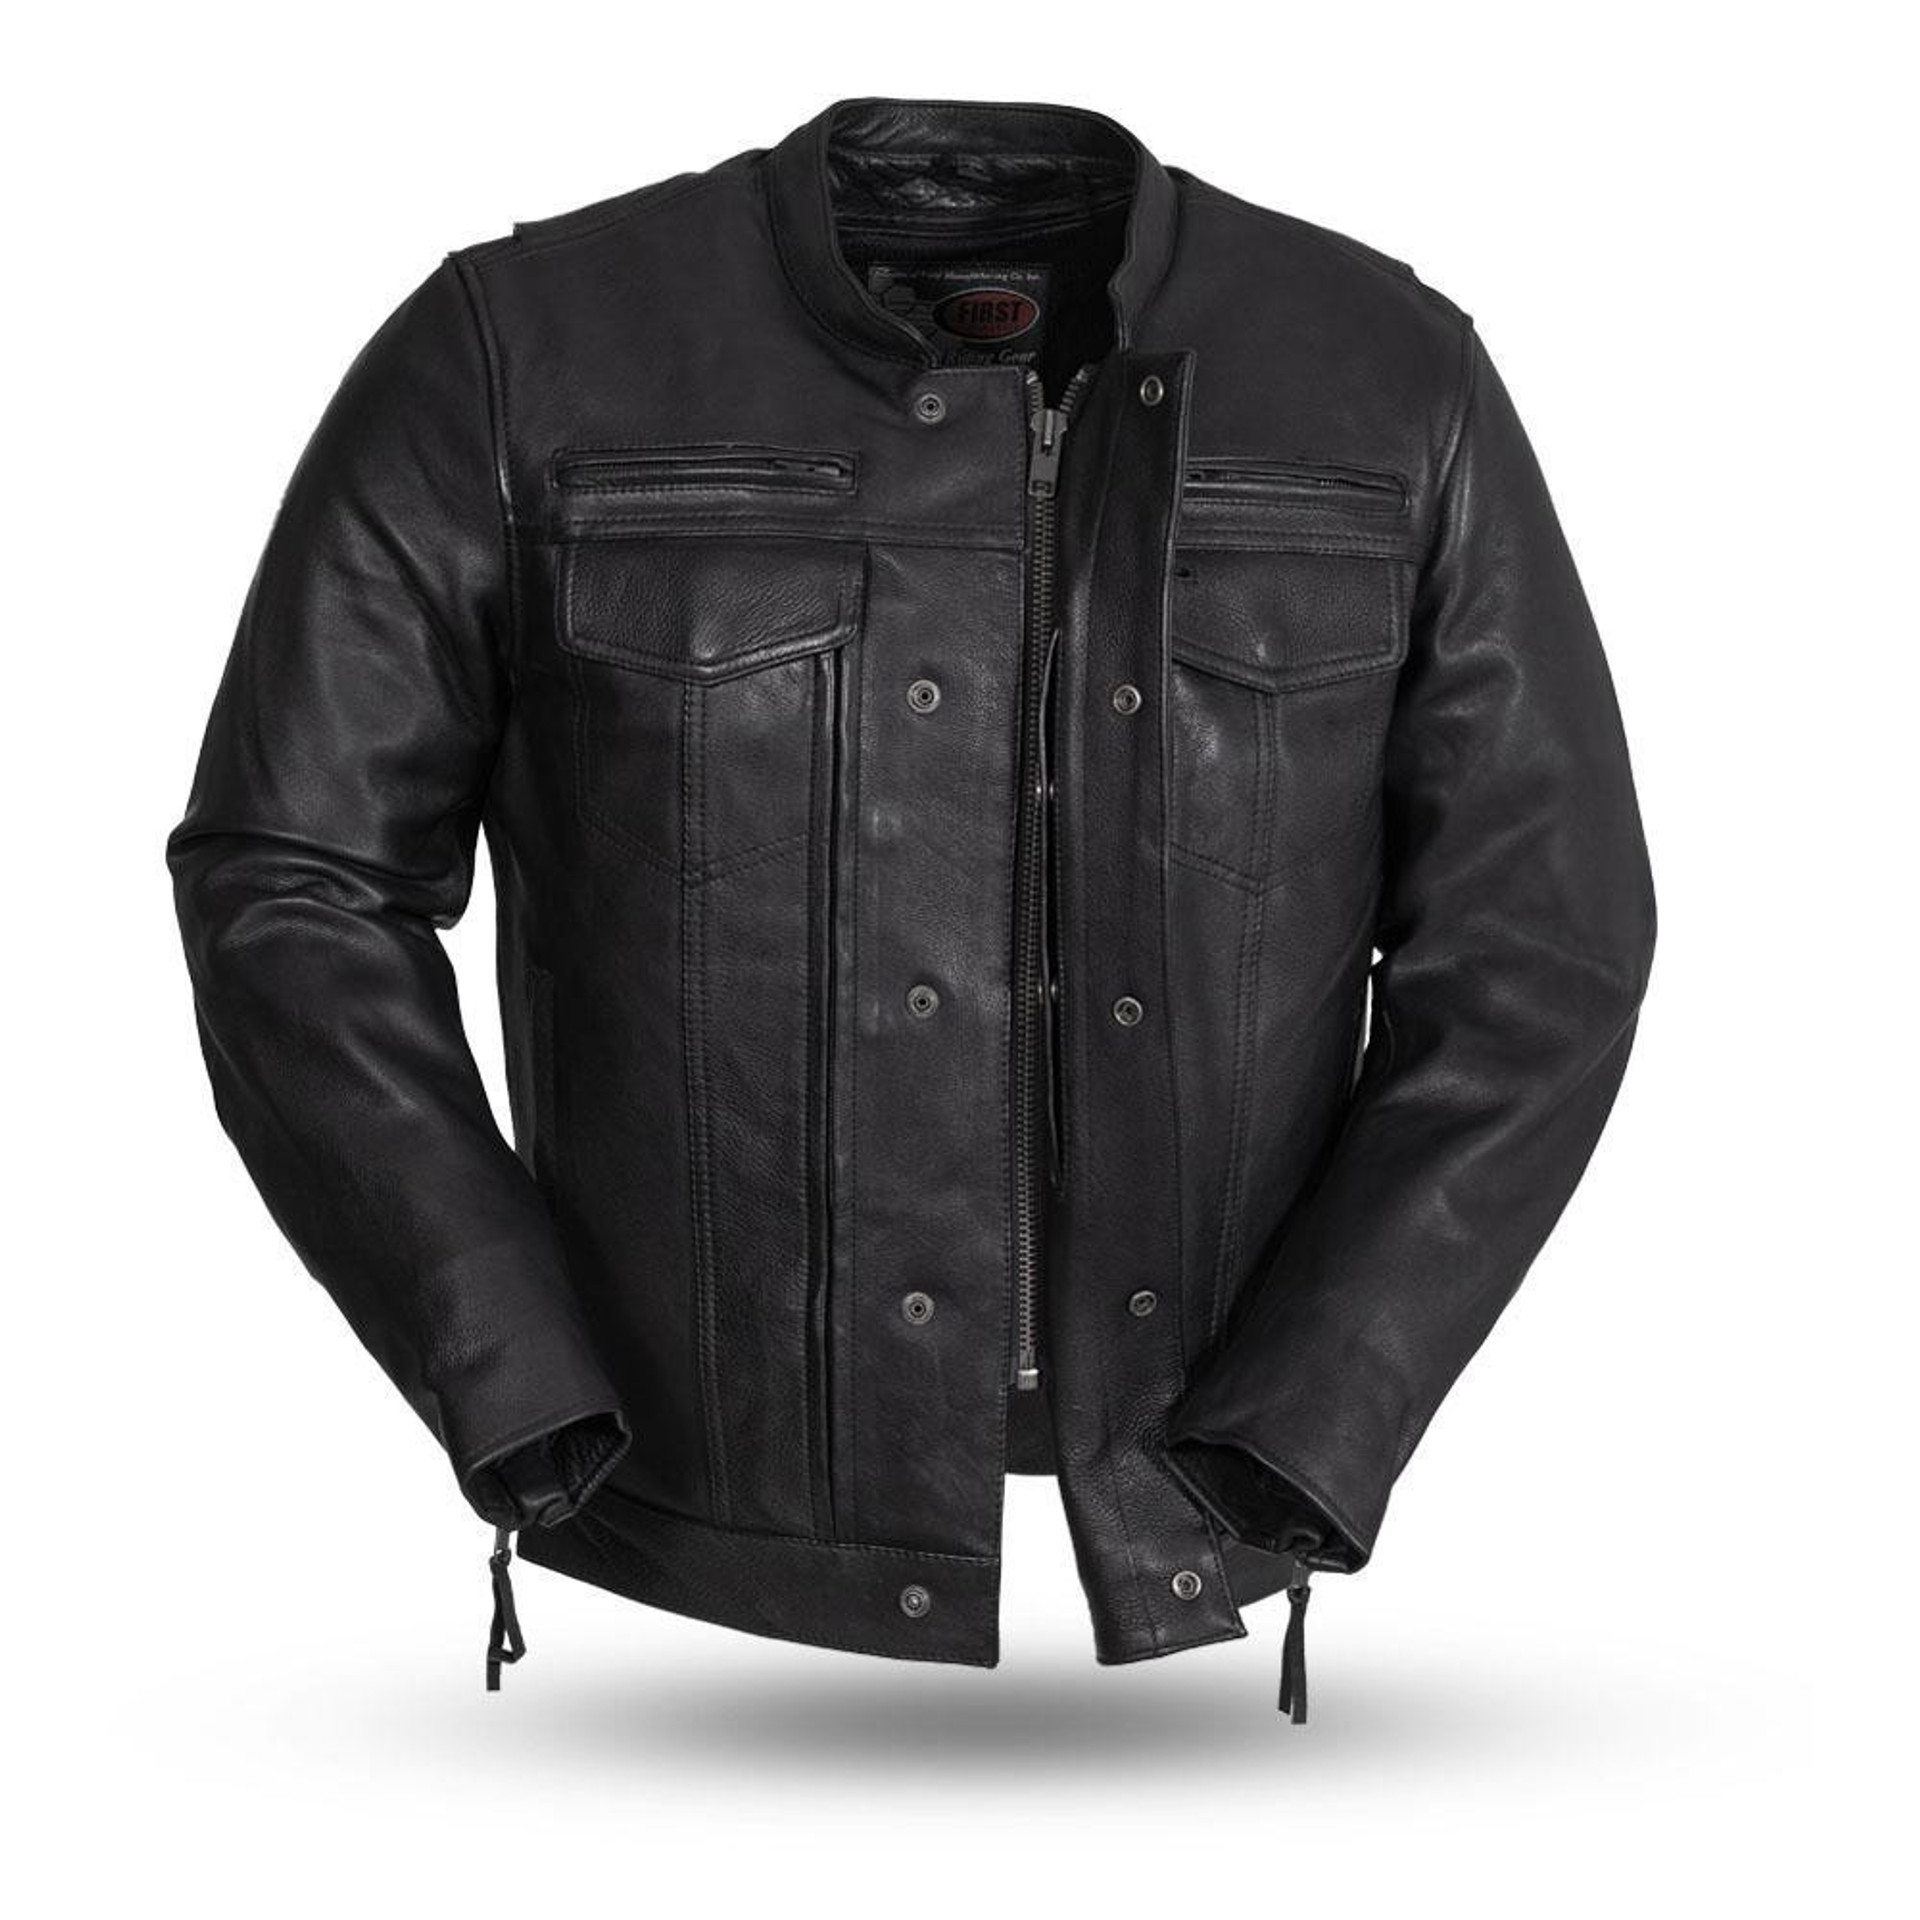 First Mfg - Raider Leather Jacket